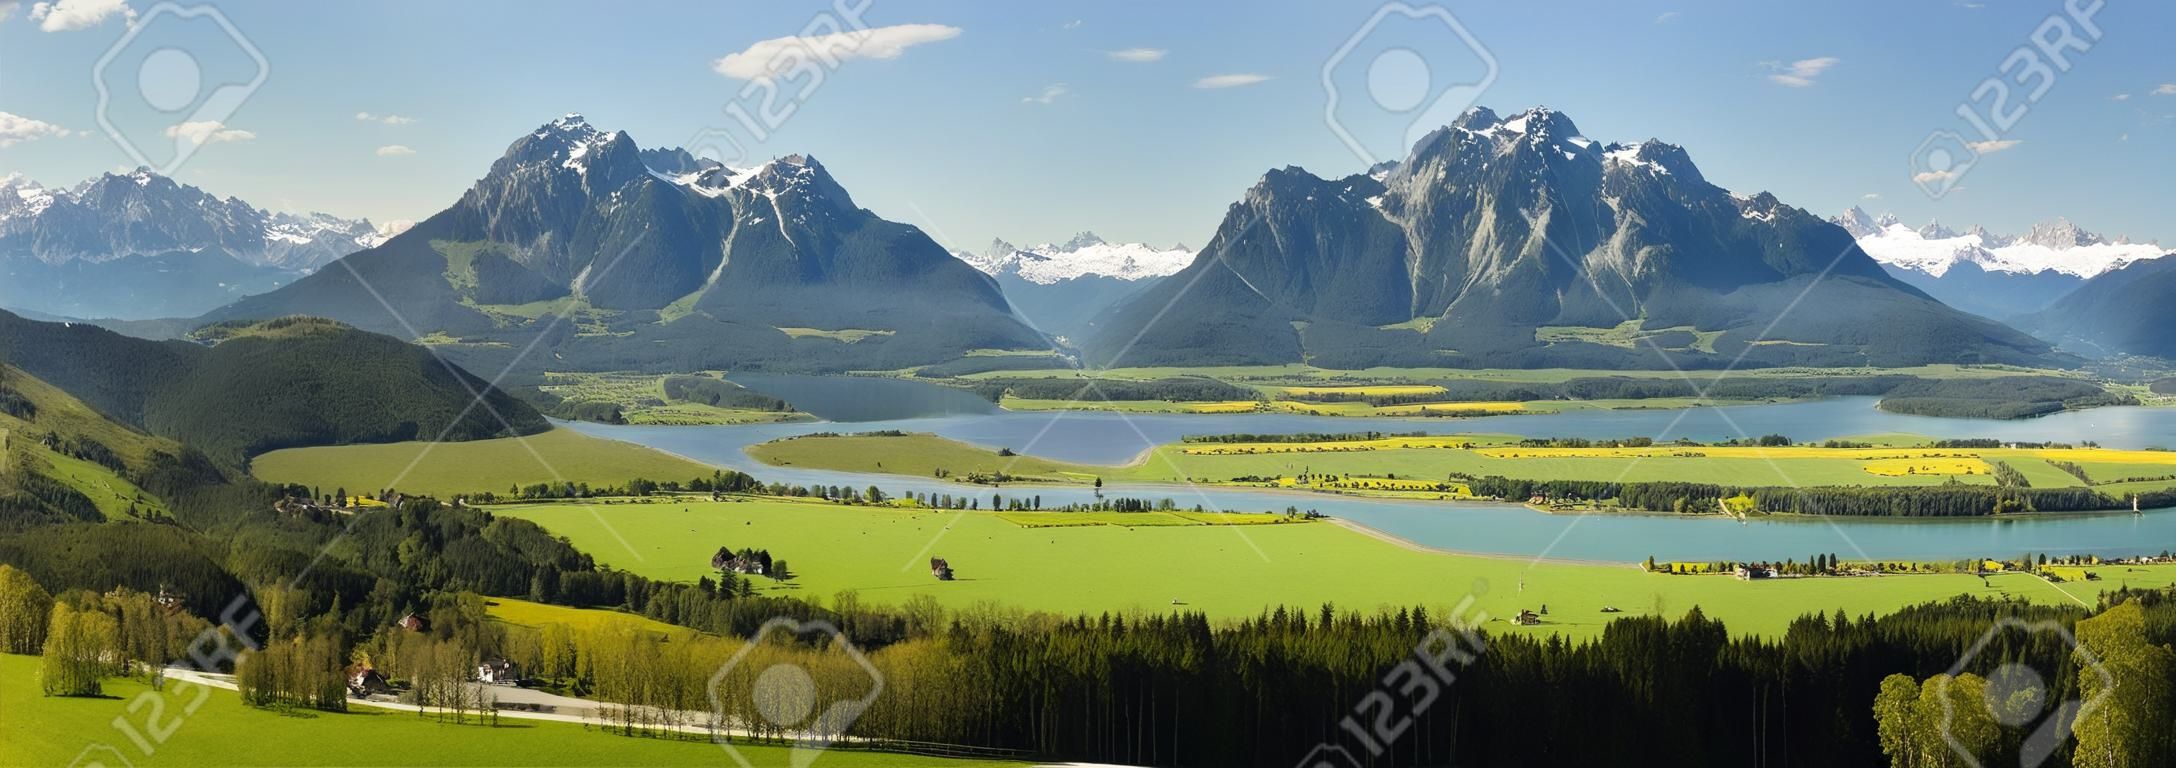 Weitwinkelpanorama Landschaft in Bayern mit See- und Alpenbergen